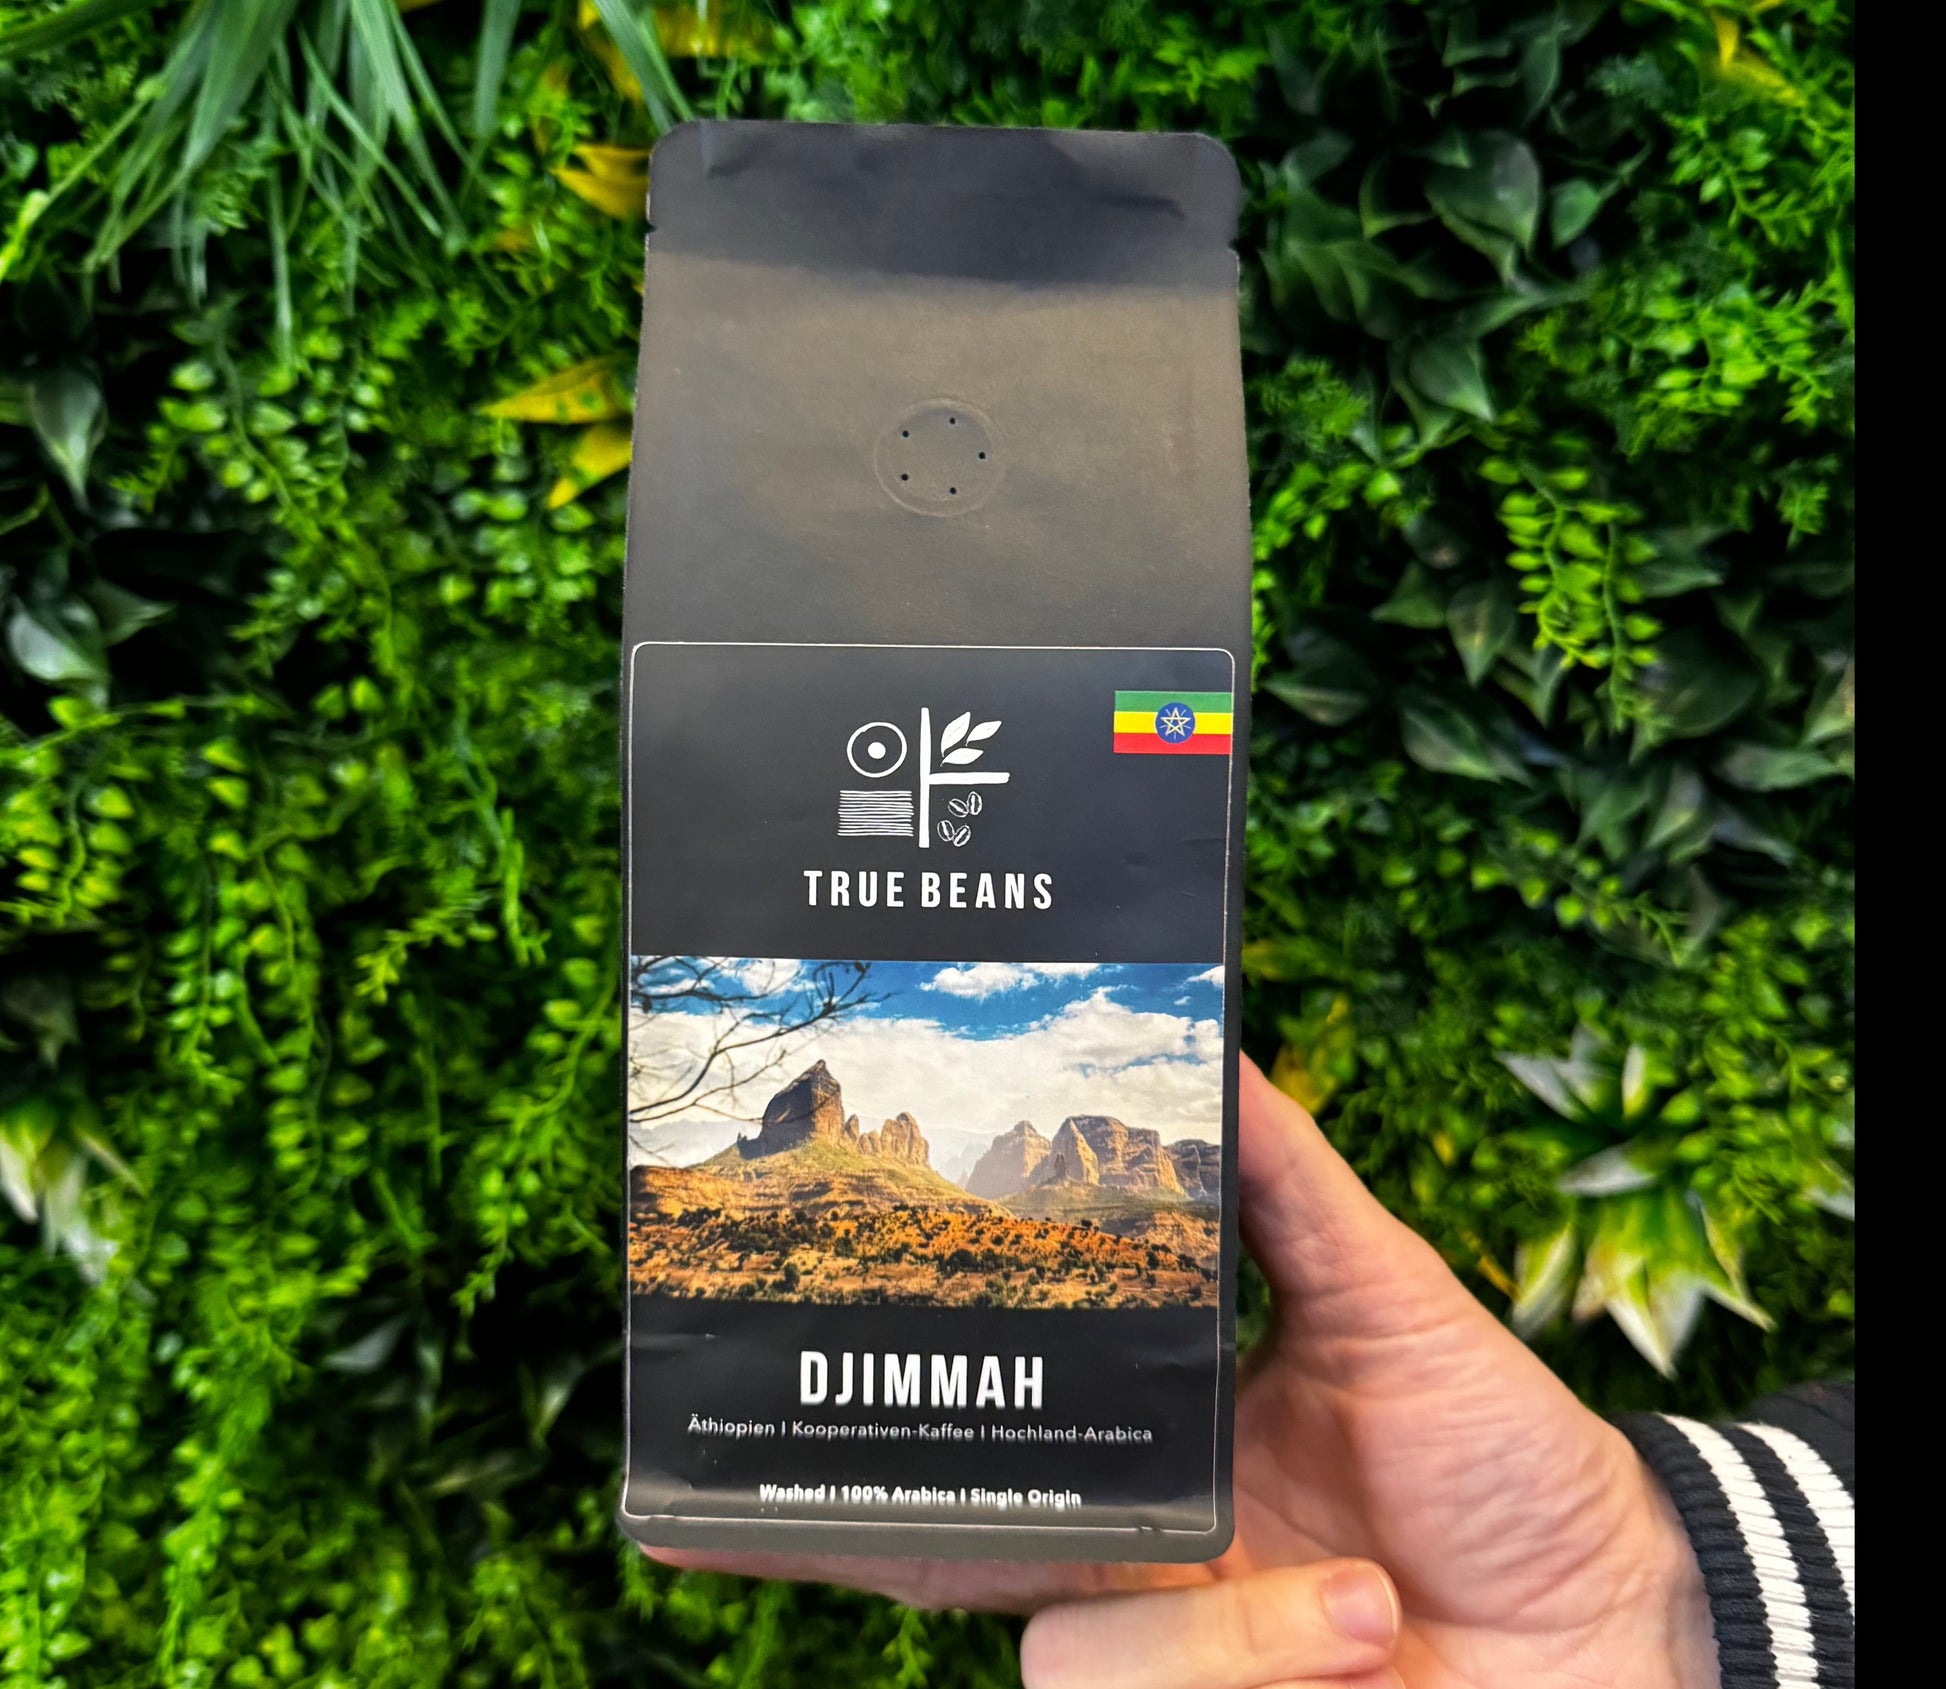 Ein Paket "TRUE BEANS DJIMMAH" äthiopischer Hochland-Arabica-Kaffee, gehalten vor einem grünen Pflanzenhintergrund.